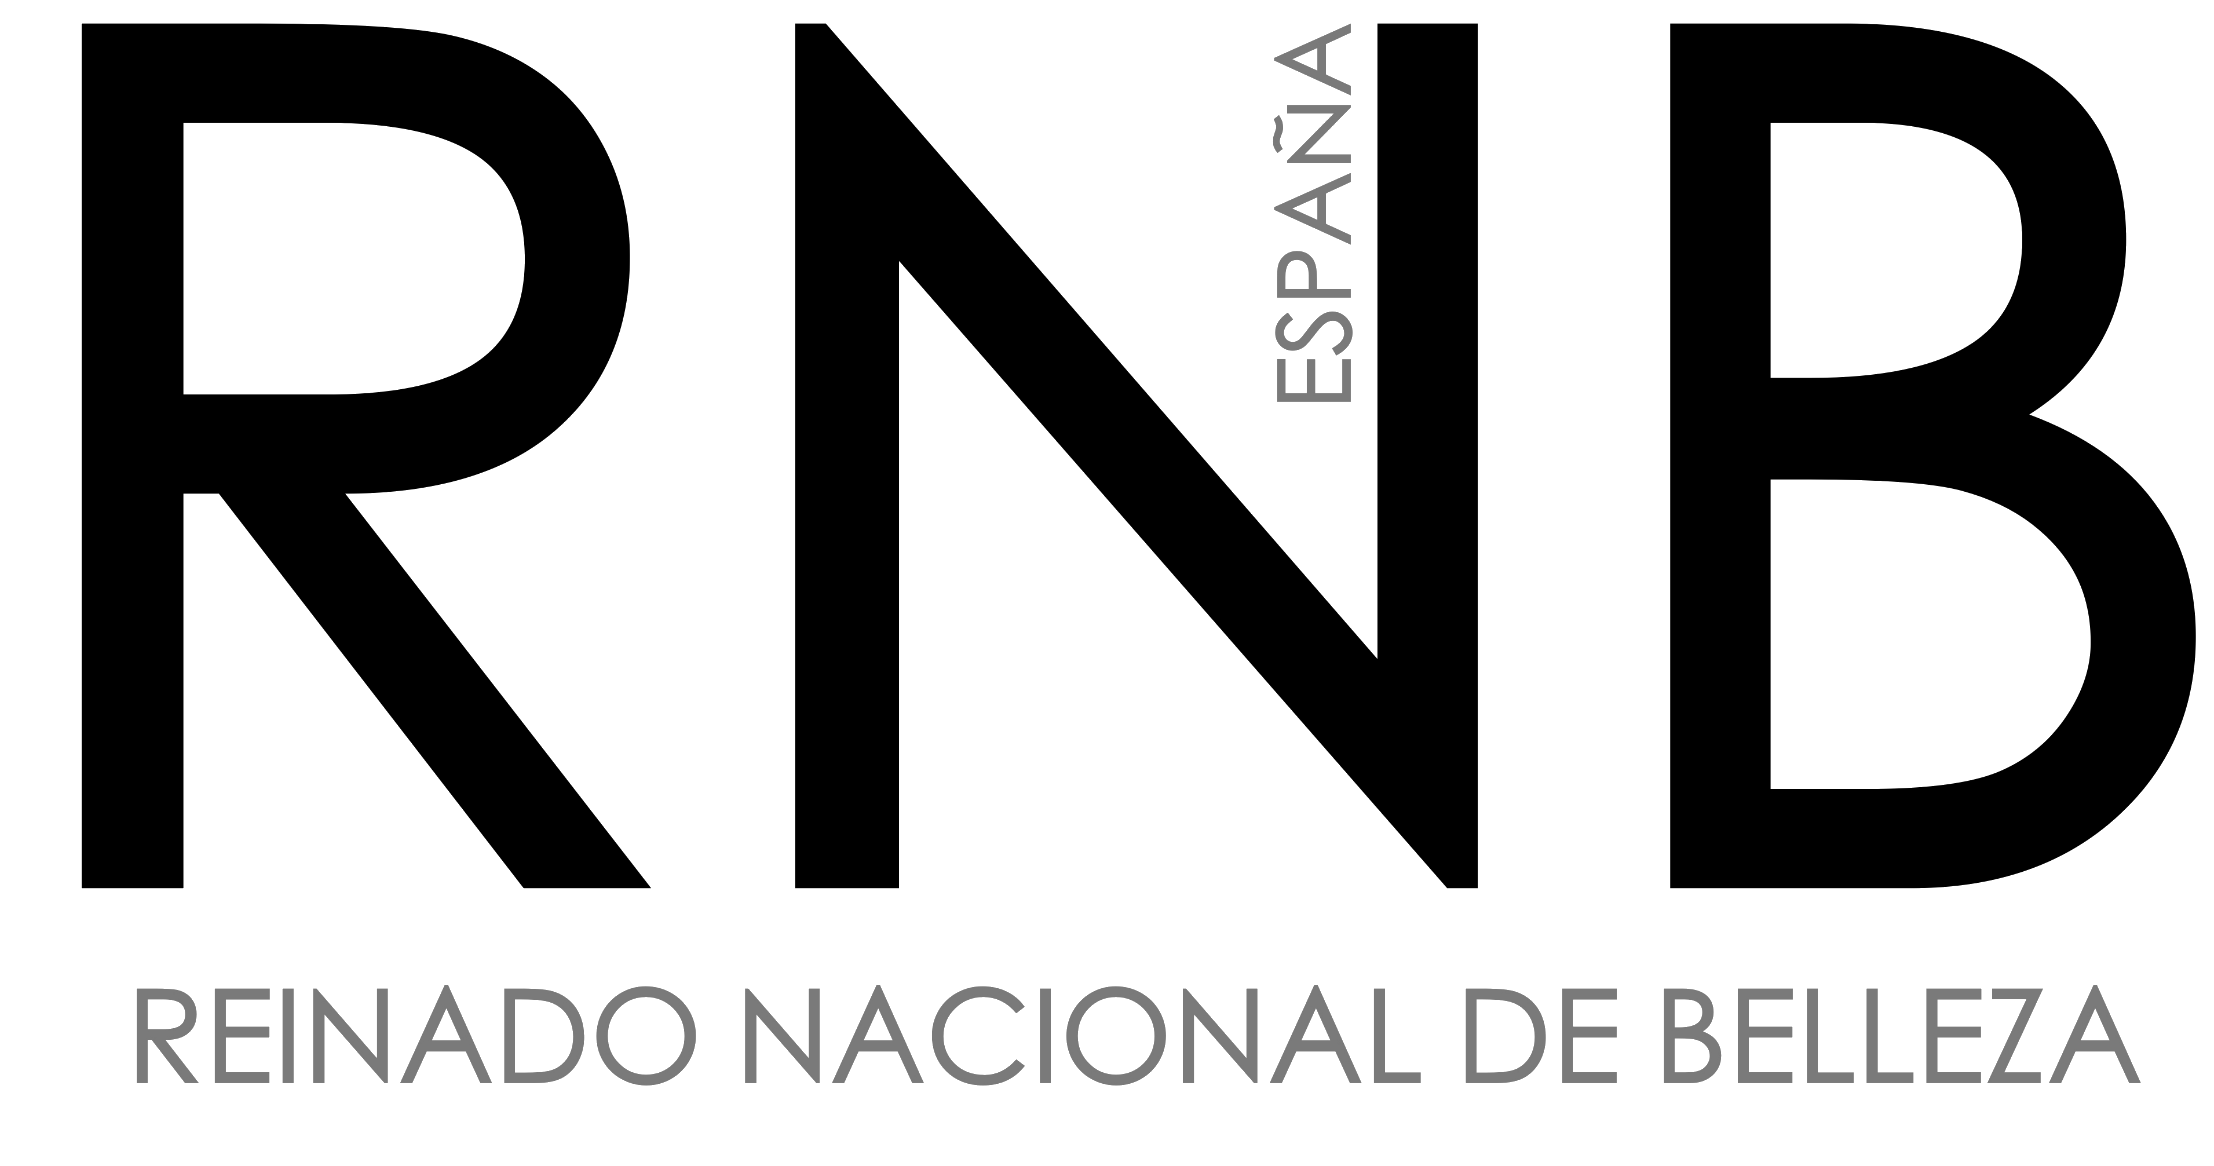 RNB España, Reinado Nacional de Belleza